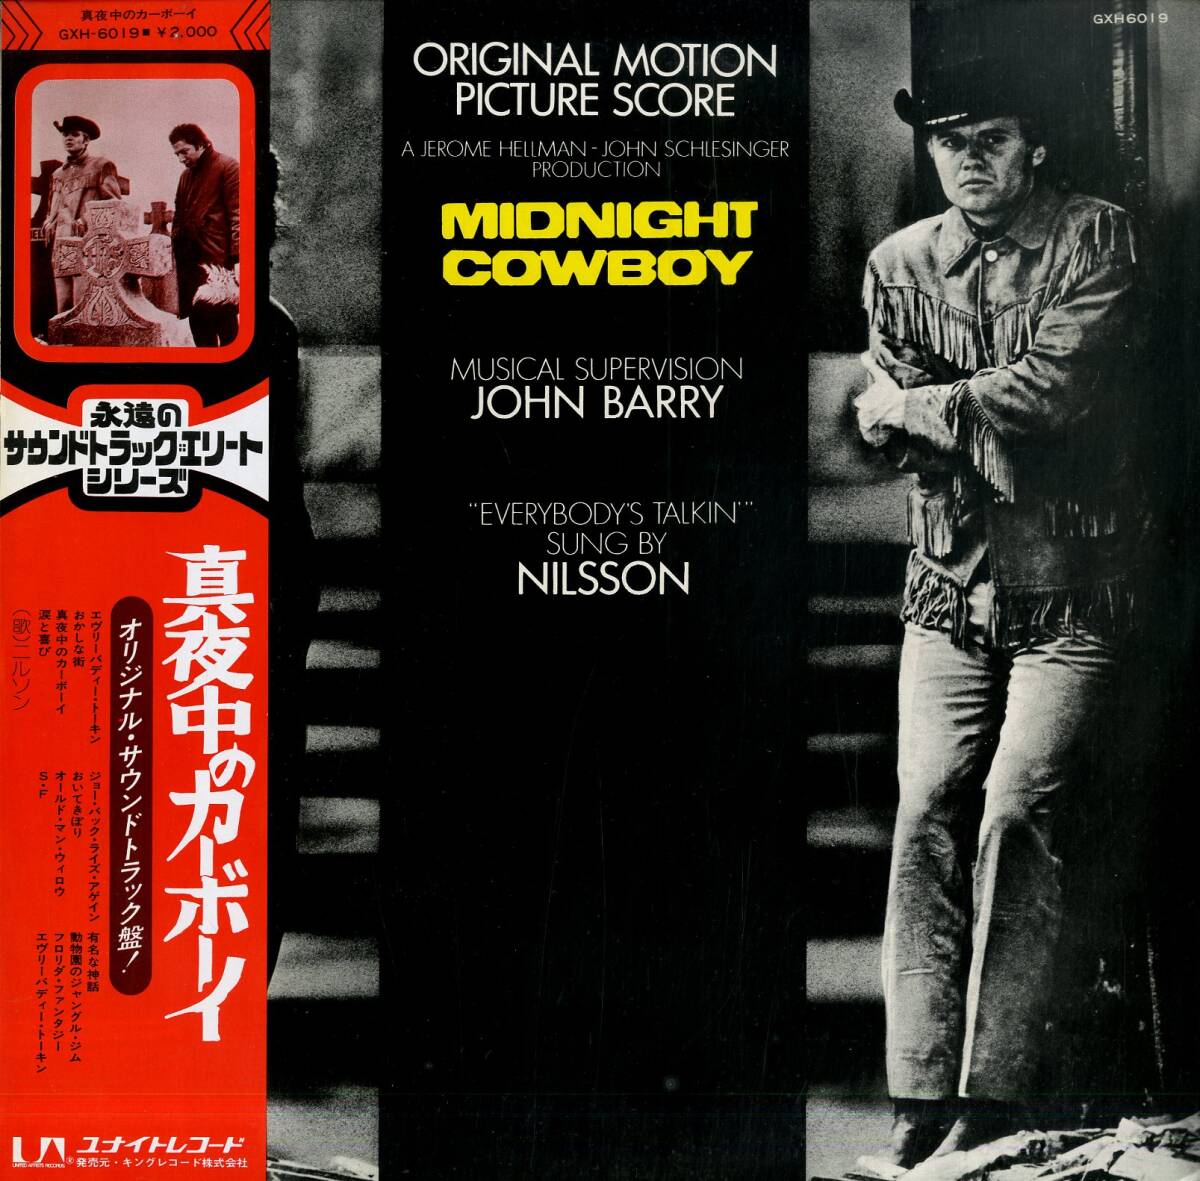 A00592669/LP/ニルソン / ザ・グループ / ジョン・バリー / エレファンツ・メモリー etc「真夜中のカーボーイ Midnight Cowboy OST (1975の画像1